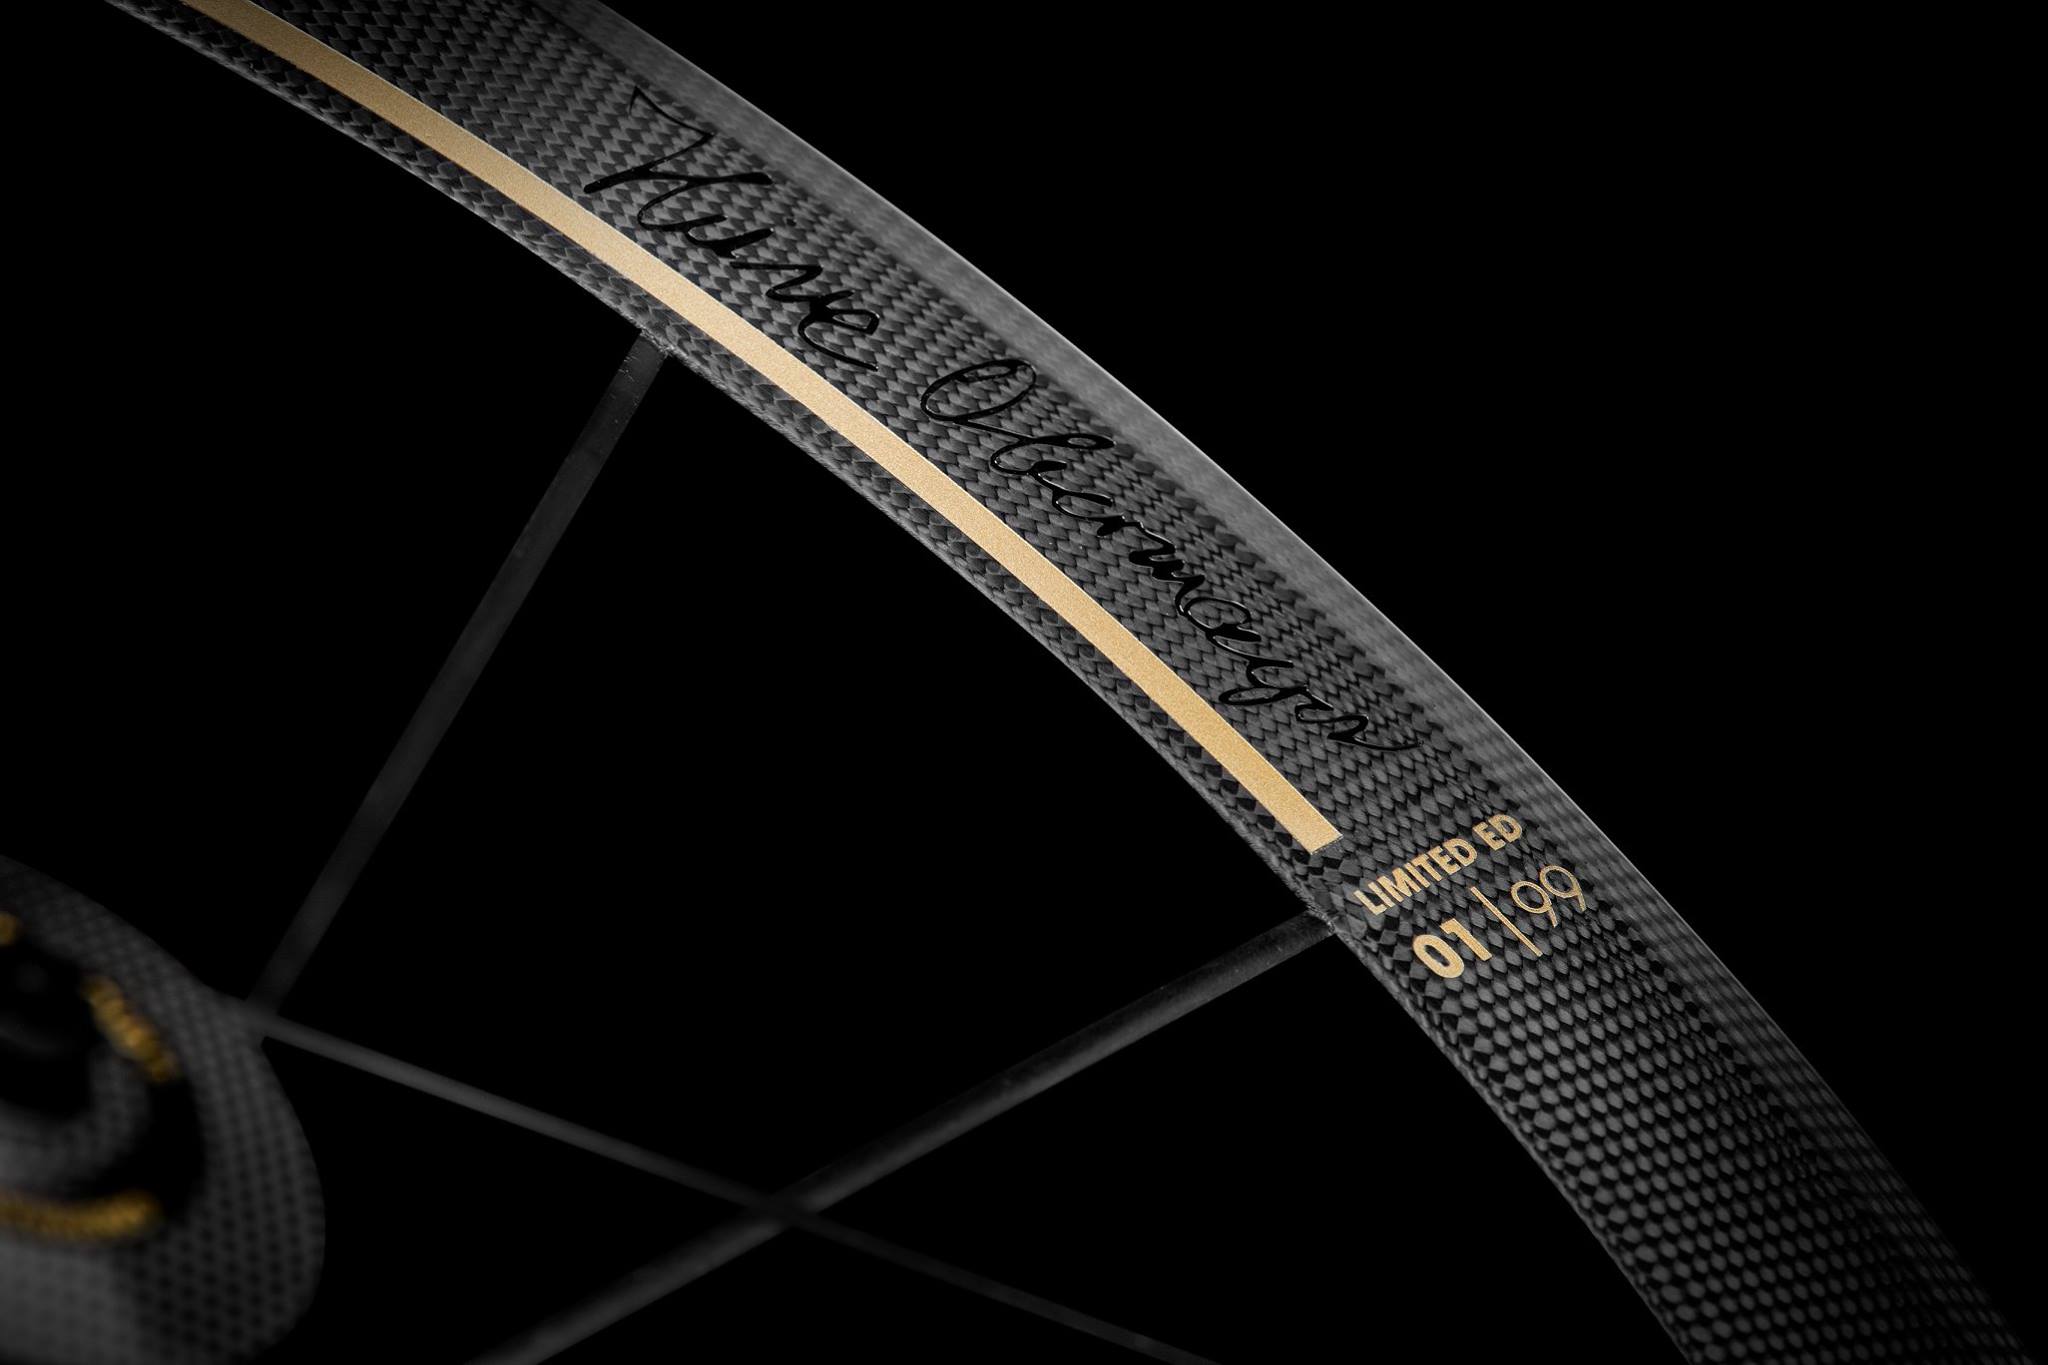 Lightweight unveils new Obermayer Gold Limited Edition Meilenstein wheels